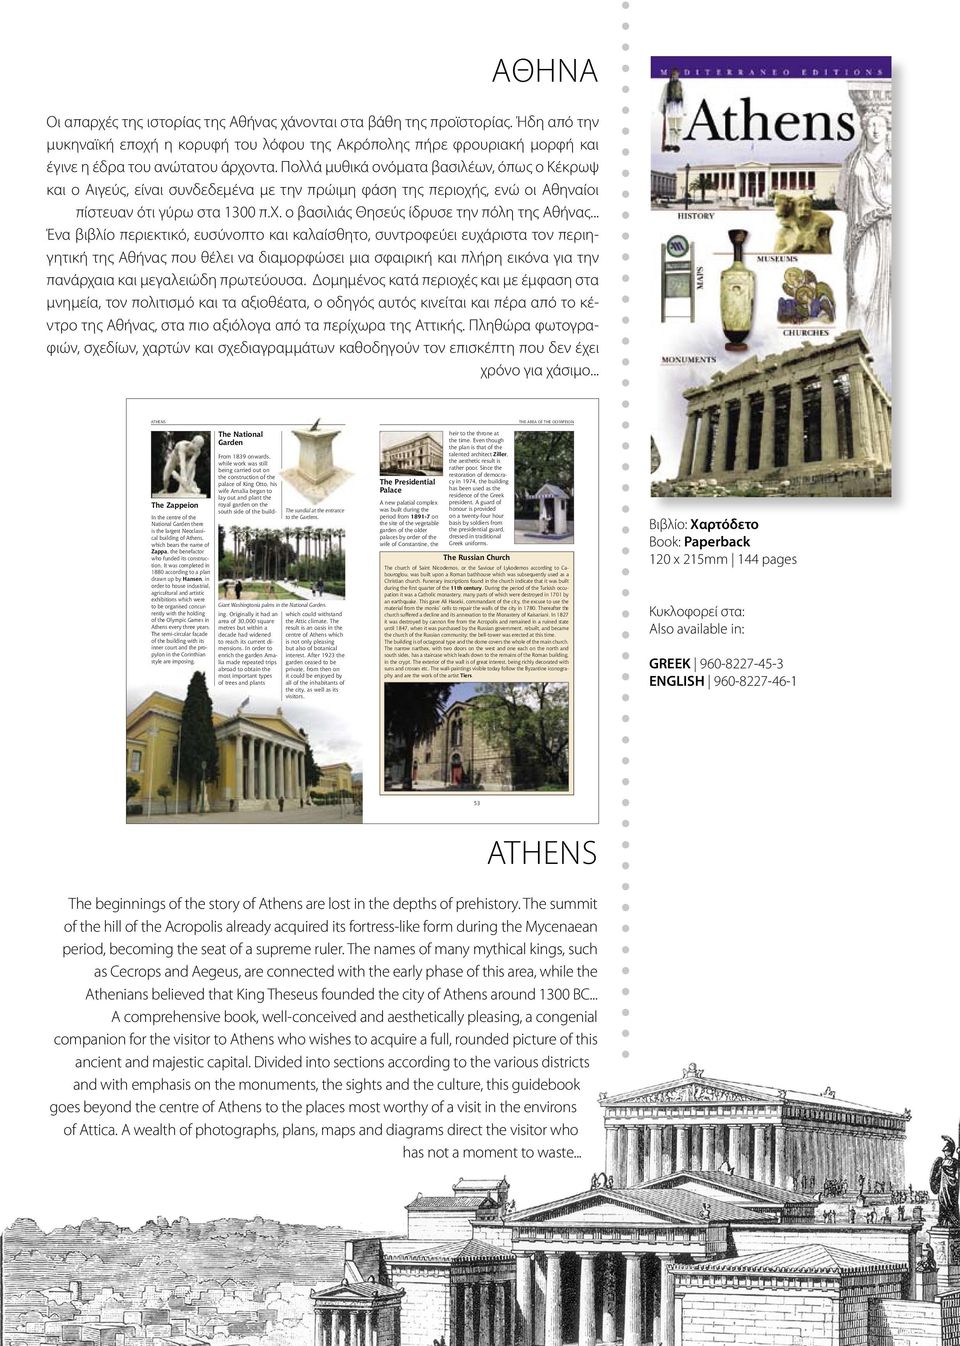 .. Ένα βιβλίο περιεκτικό, ευσύνοπτο και καλαίσθητο, συντροφεύει ευχάριστα τον περιηγητική της Αθήνας που θέλει να διαμορφώσει μια σφαιρική και πλήρη εικόνα για την πανάρχαια και μεγαλειώδη πρωτεύουσα.